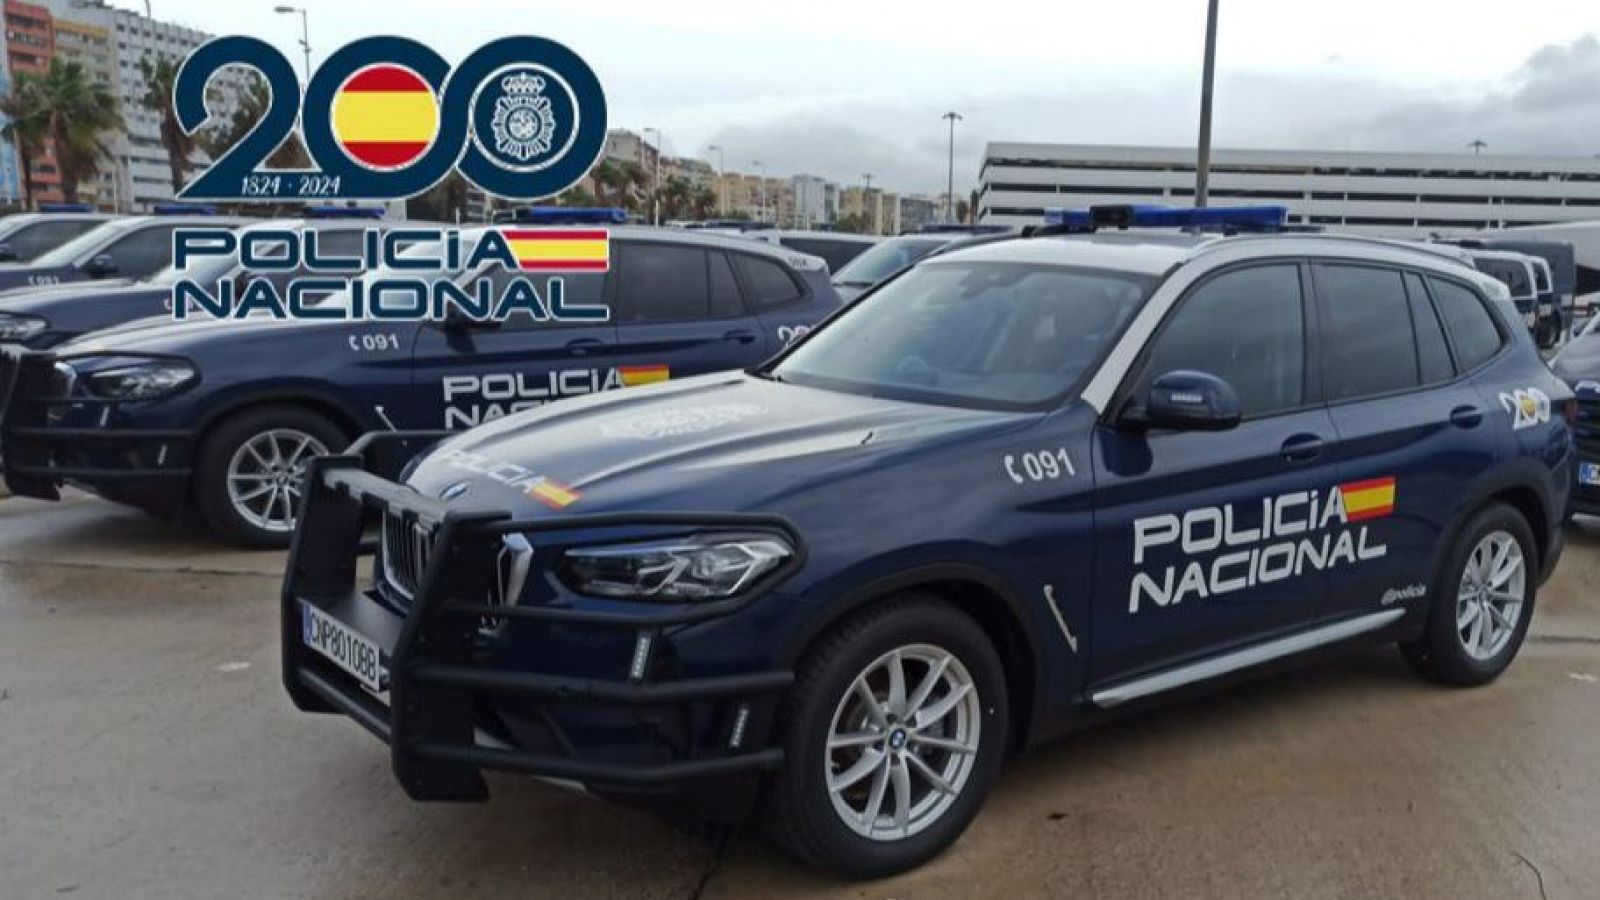 La Policía Nacional desarticula una banda criminal en Sevilla